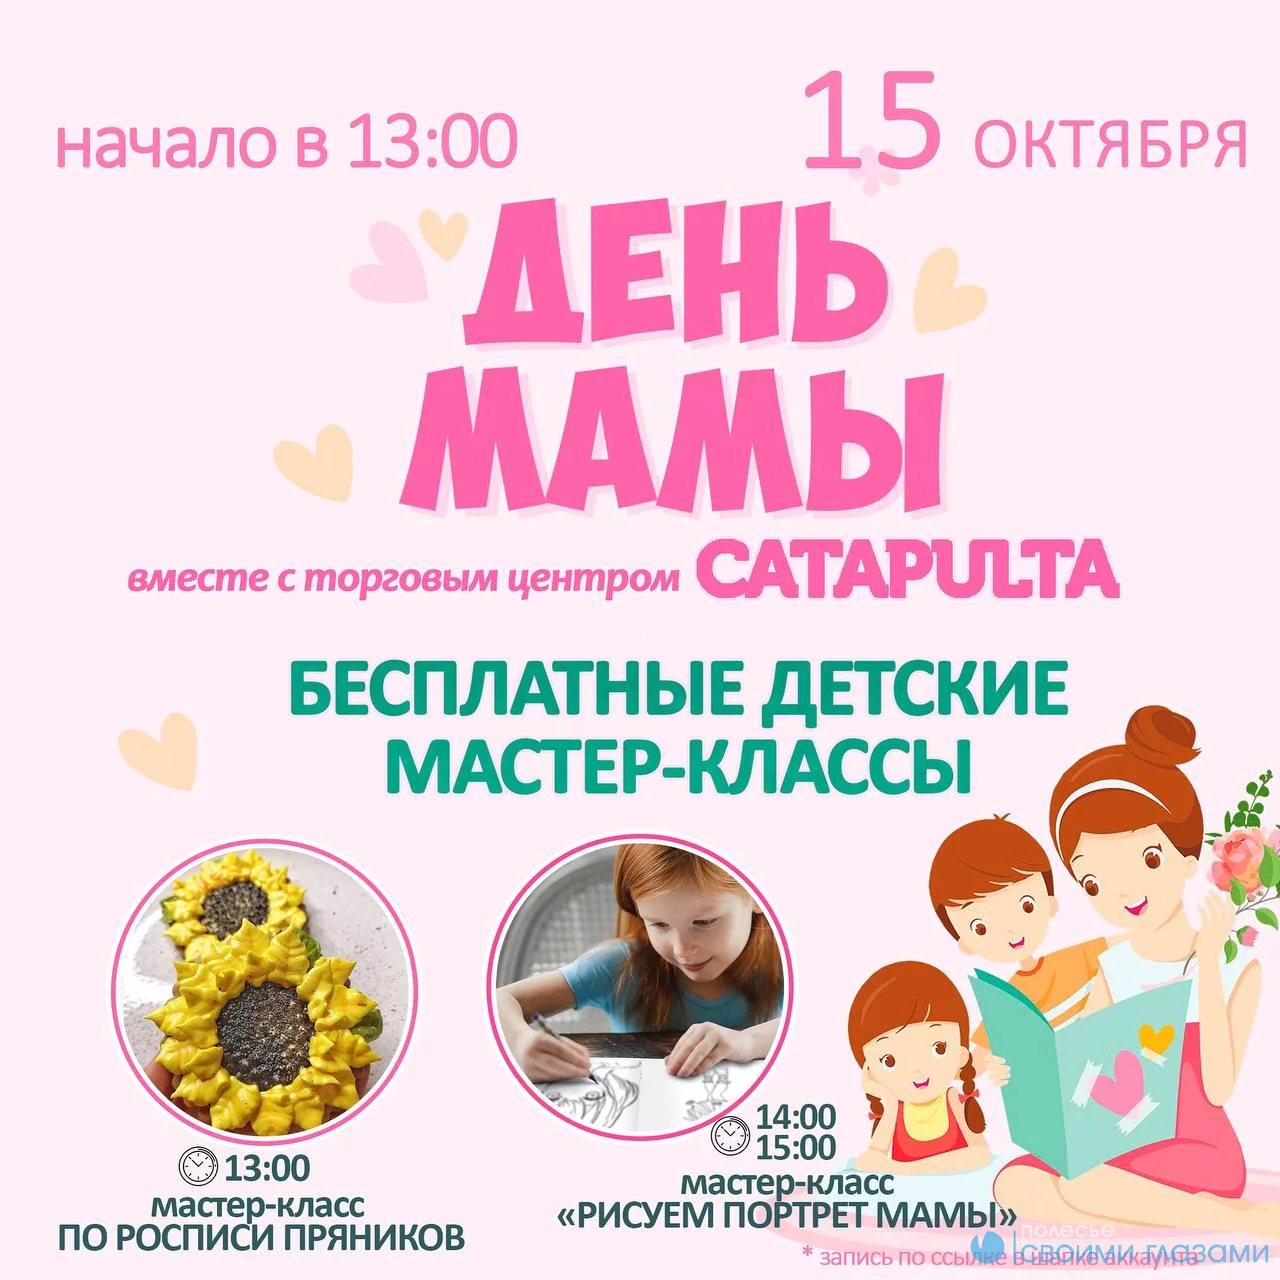 Бесплатные мастер-классы для детей пройдут ко Дню матери